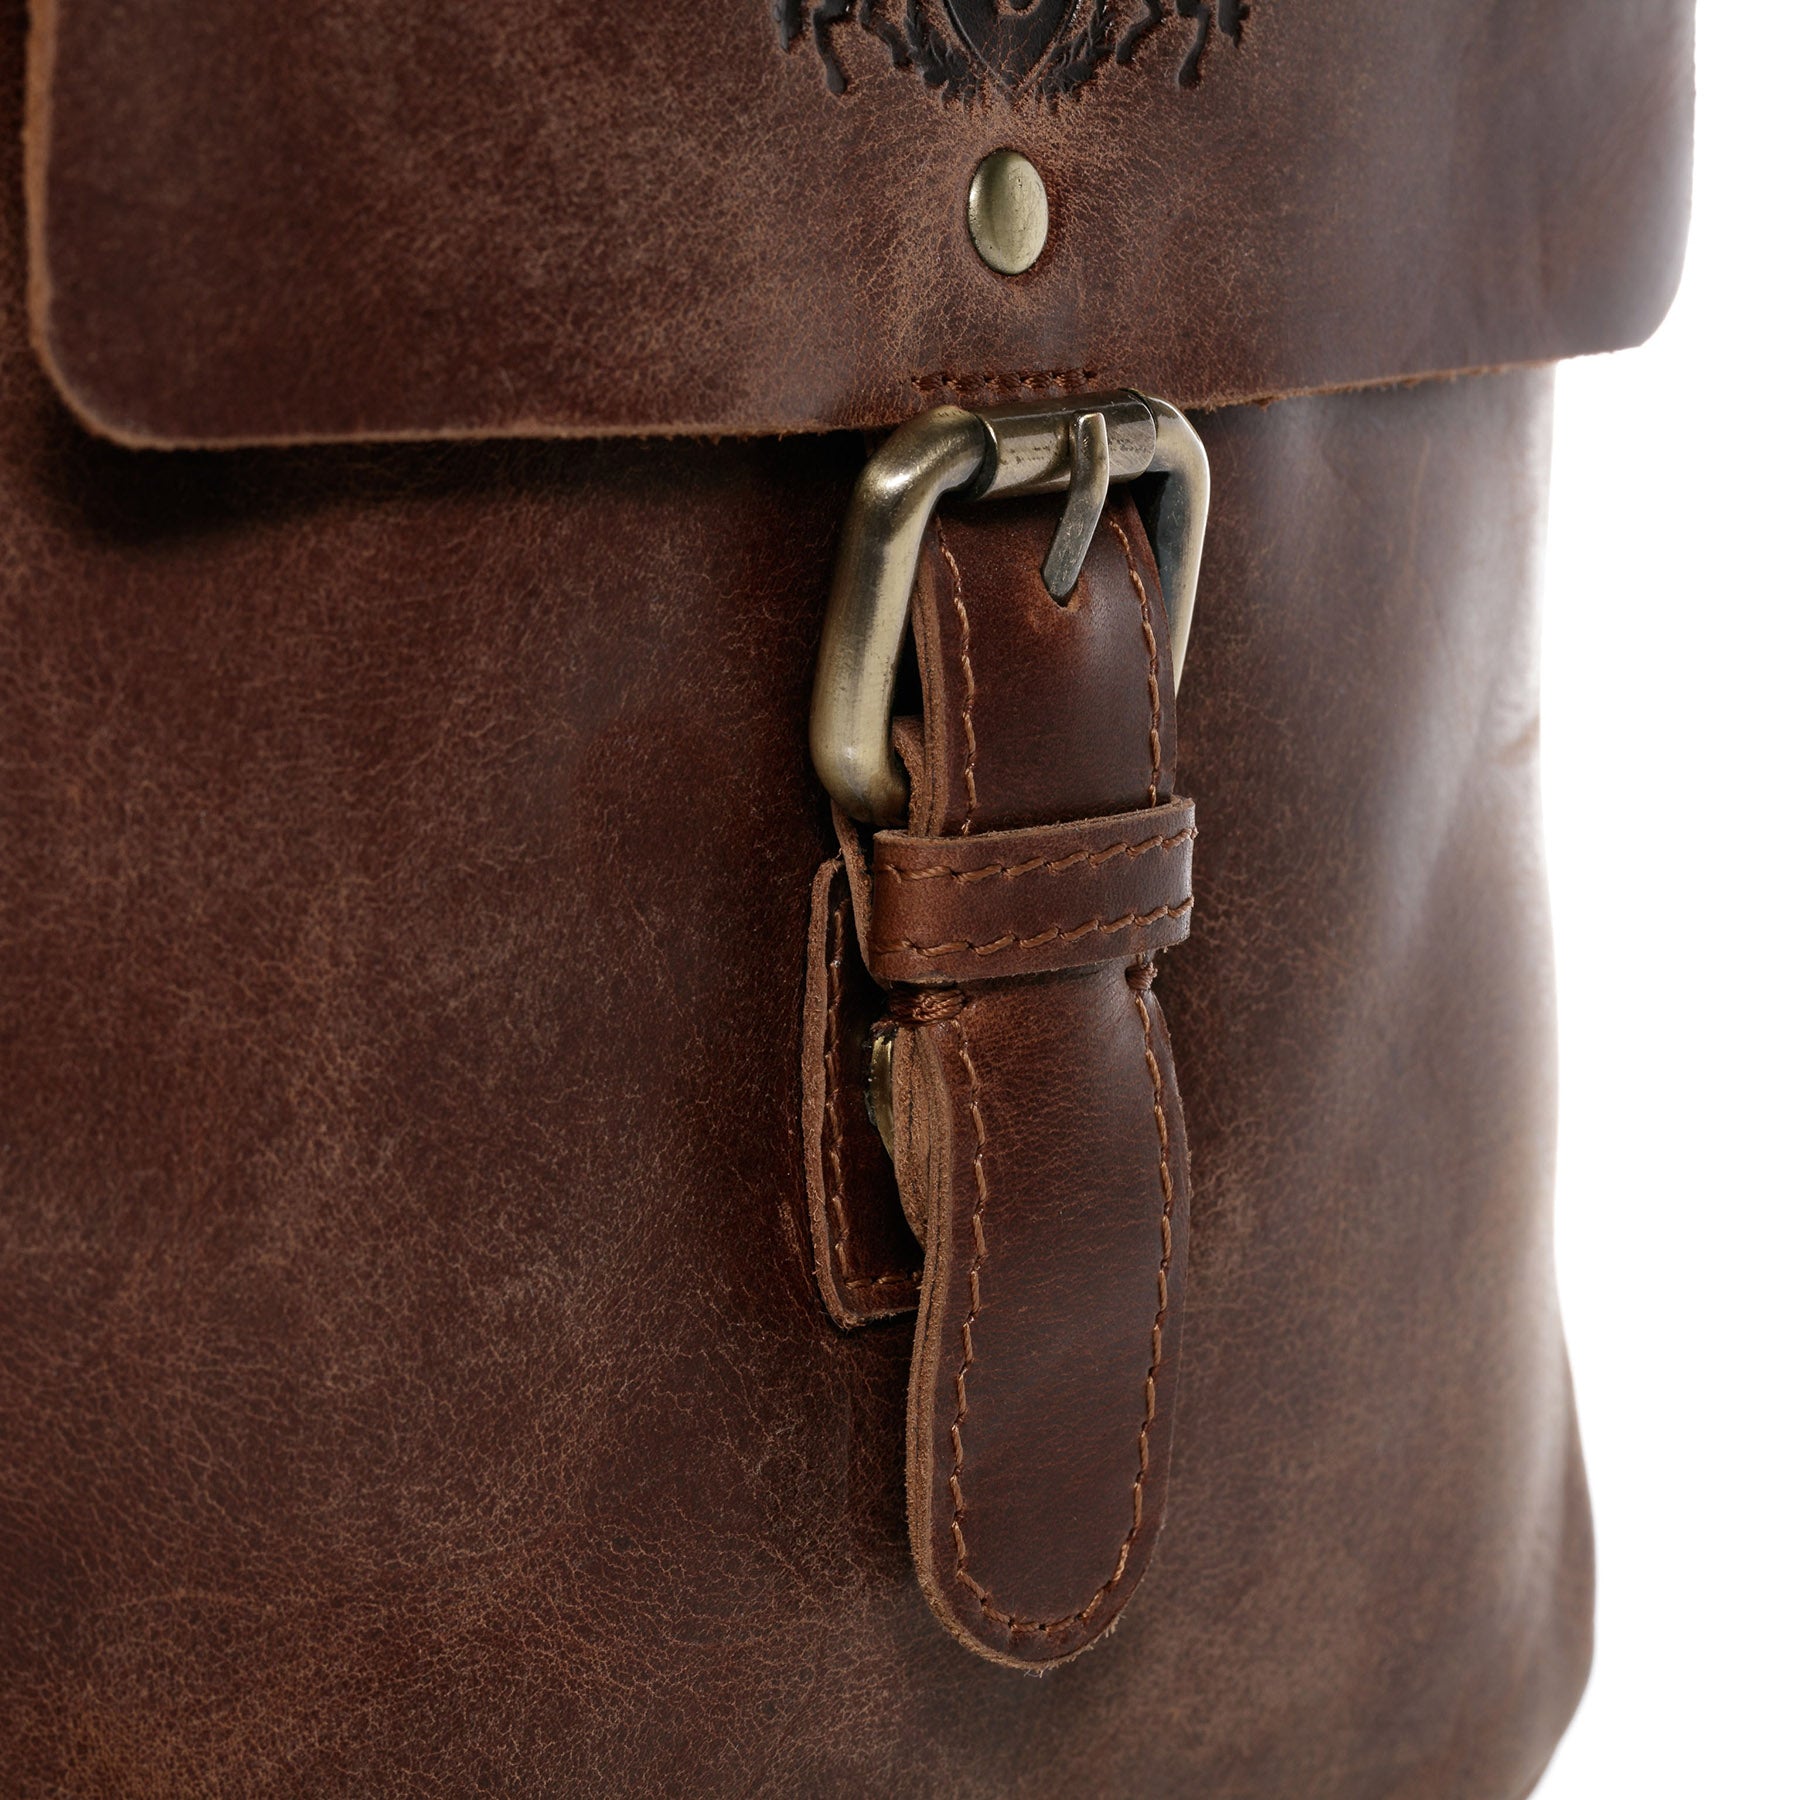 Shoulder bag ORLANDO natural leather brown-cognac